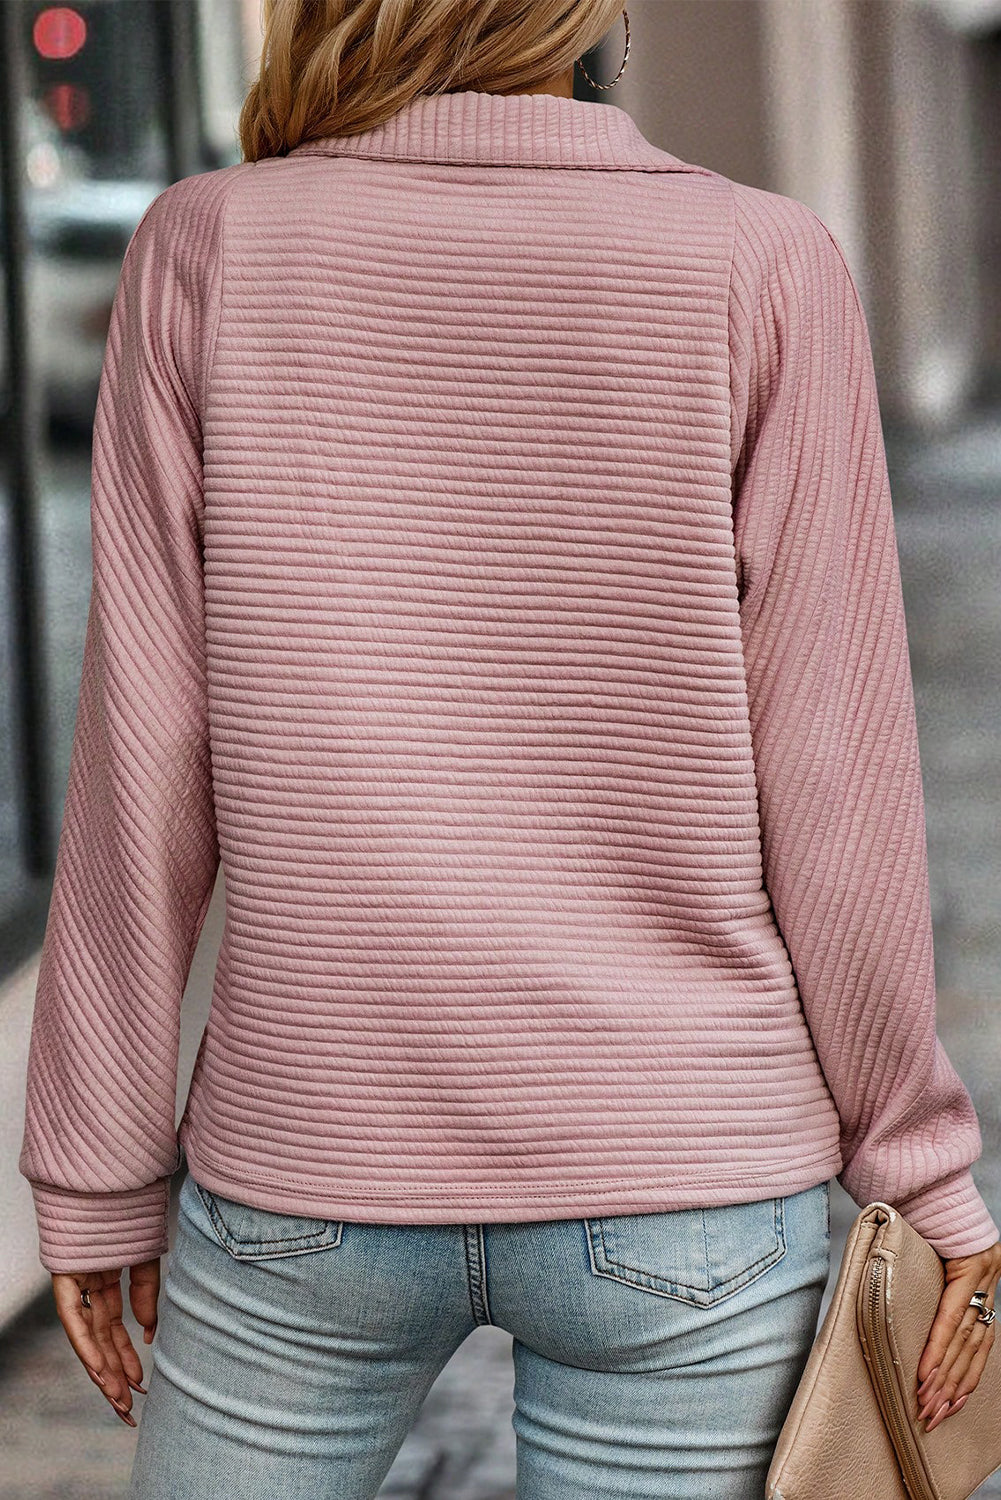 Mittelgraues, geripptes Sweatshirt mit Viertelreißverschluss